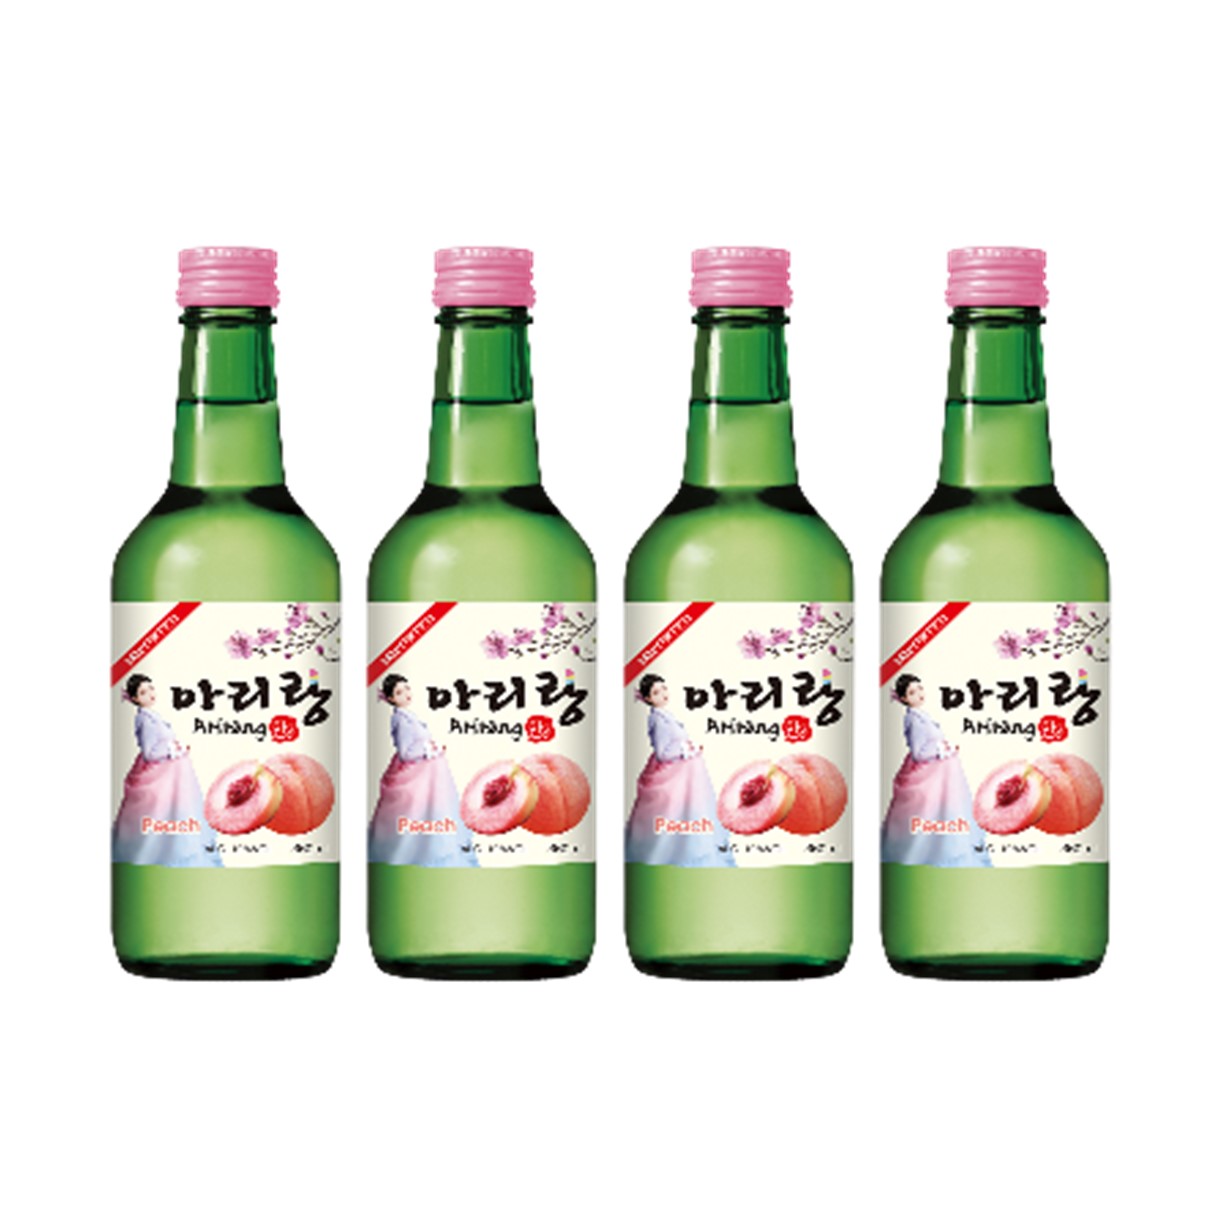 韓國【阿里郎】燒酒360ml/瓶，6瓶組 (水蜜桃)